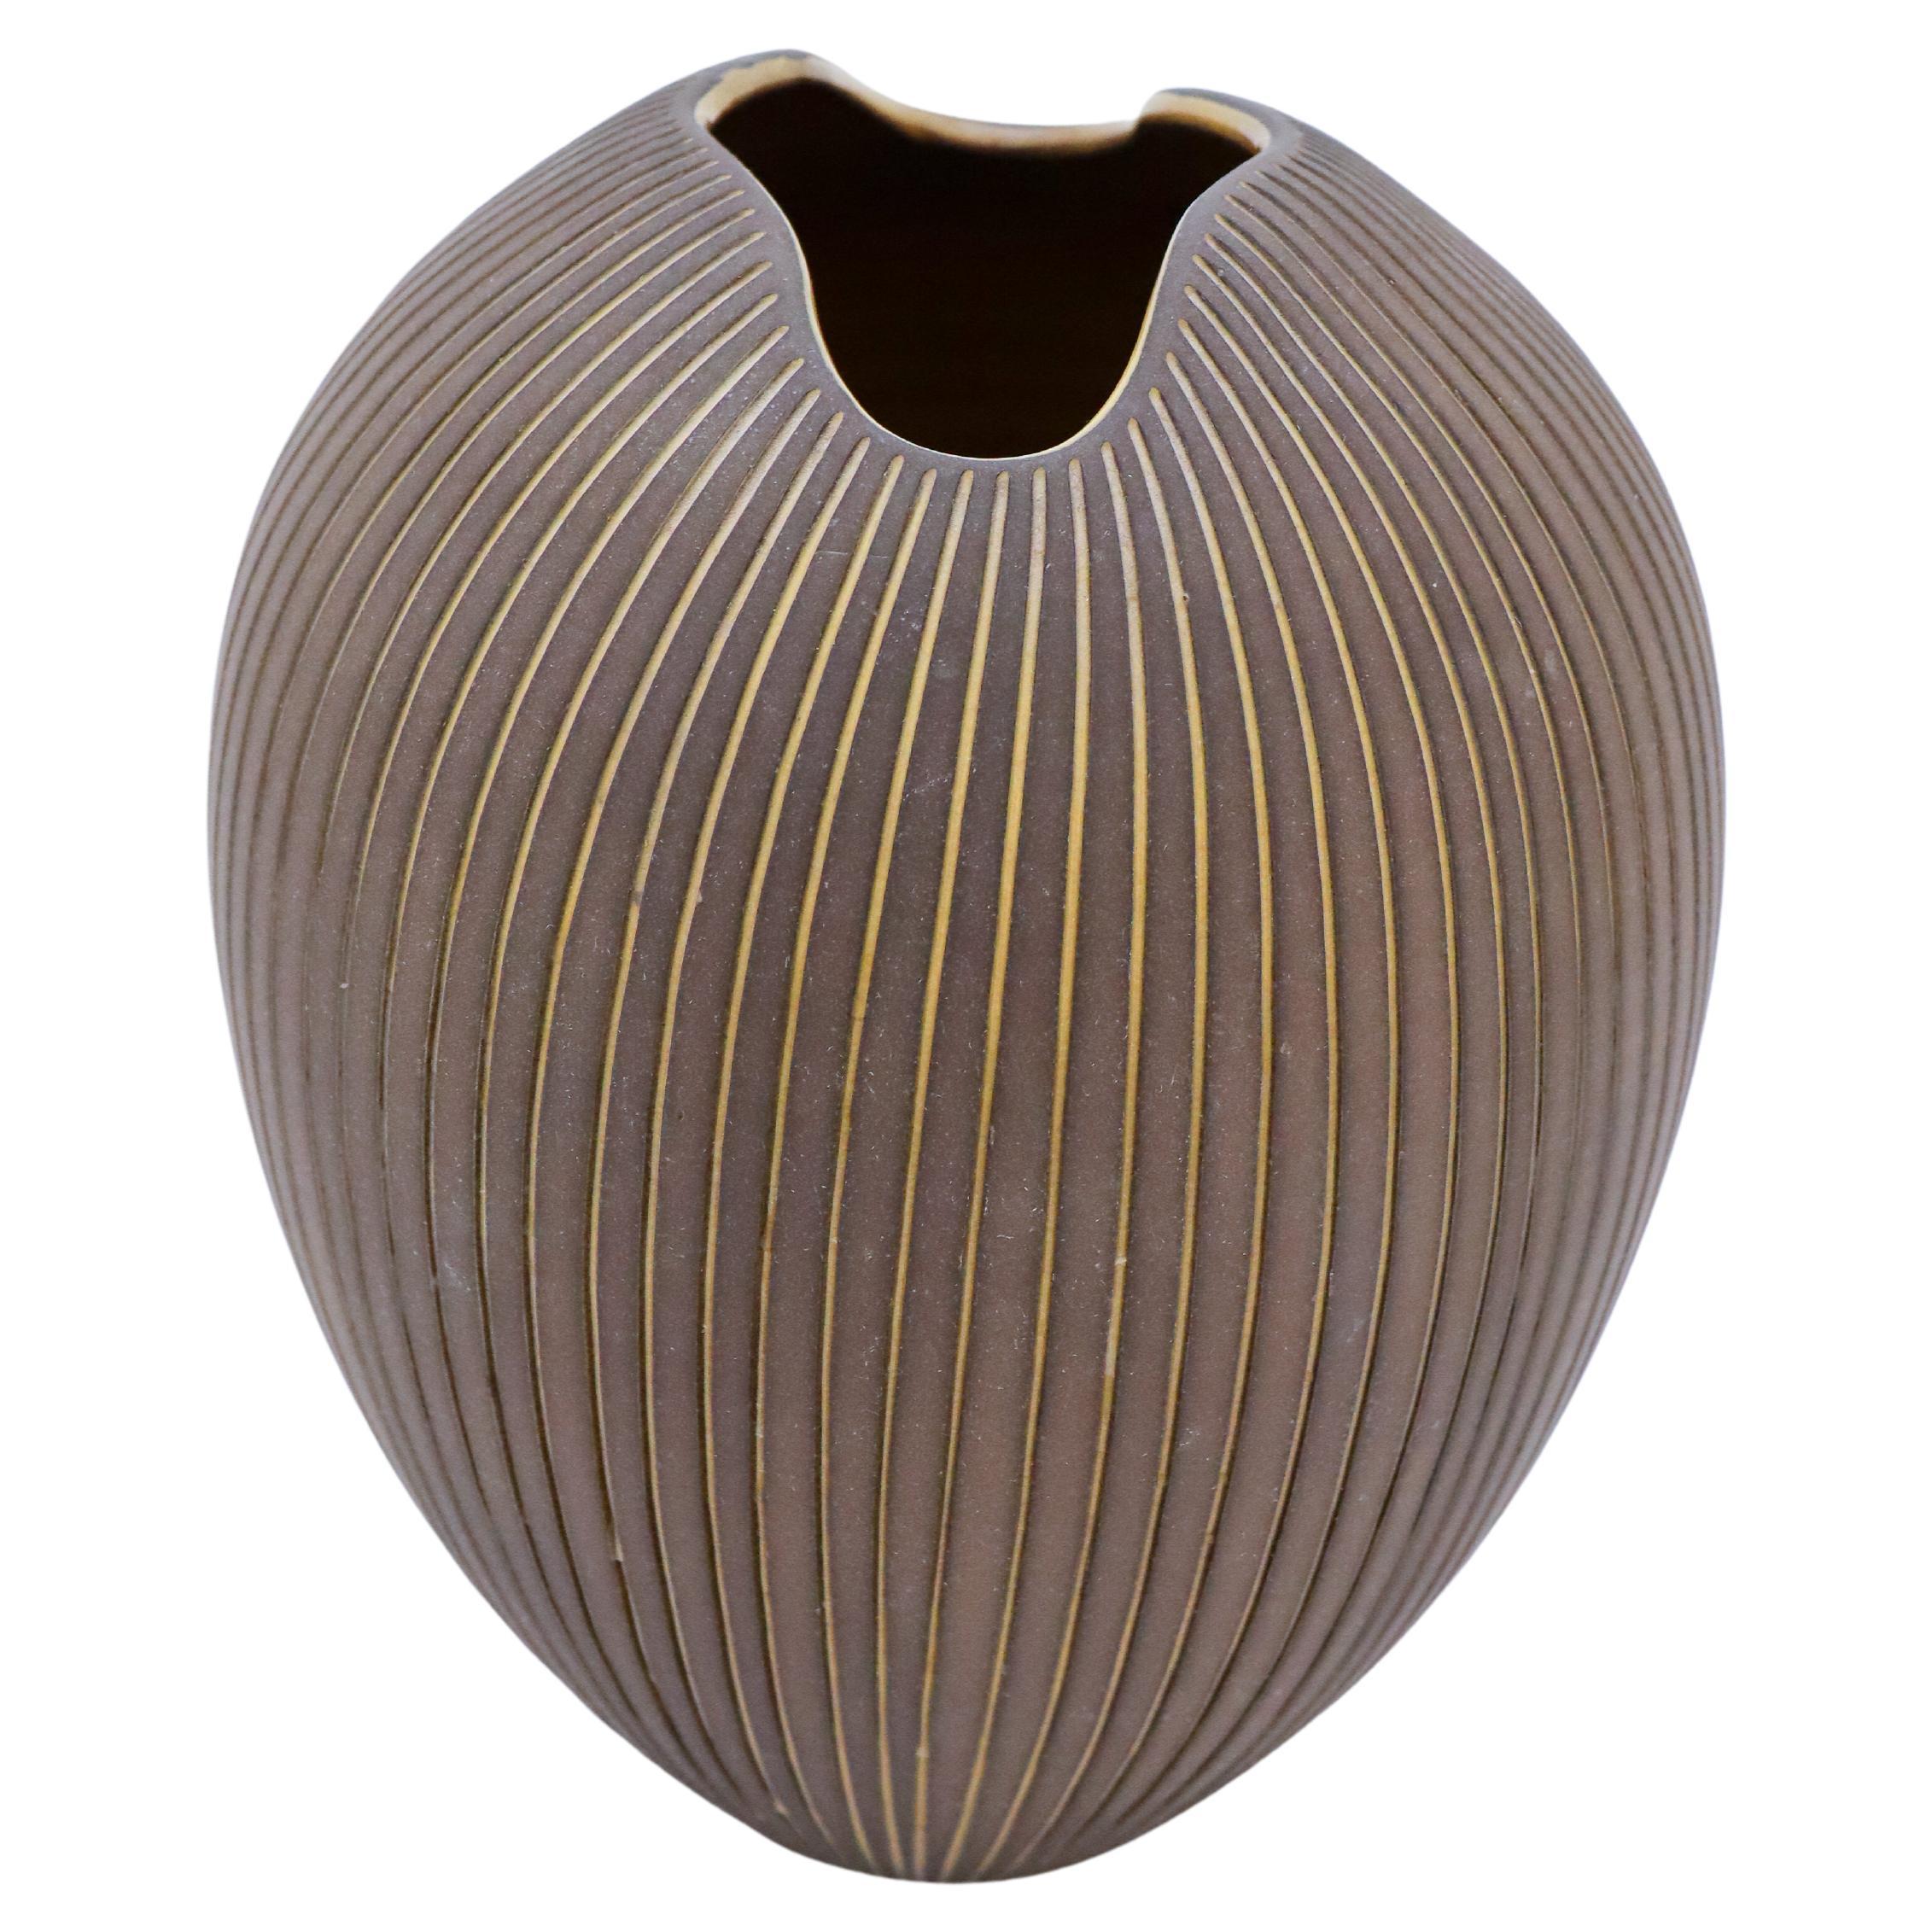 Magnifique vase en céramique Hjrdis Oldfors, Upsala Ekeby, « Cocos », années 1950